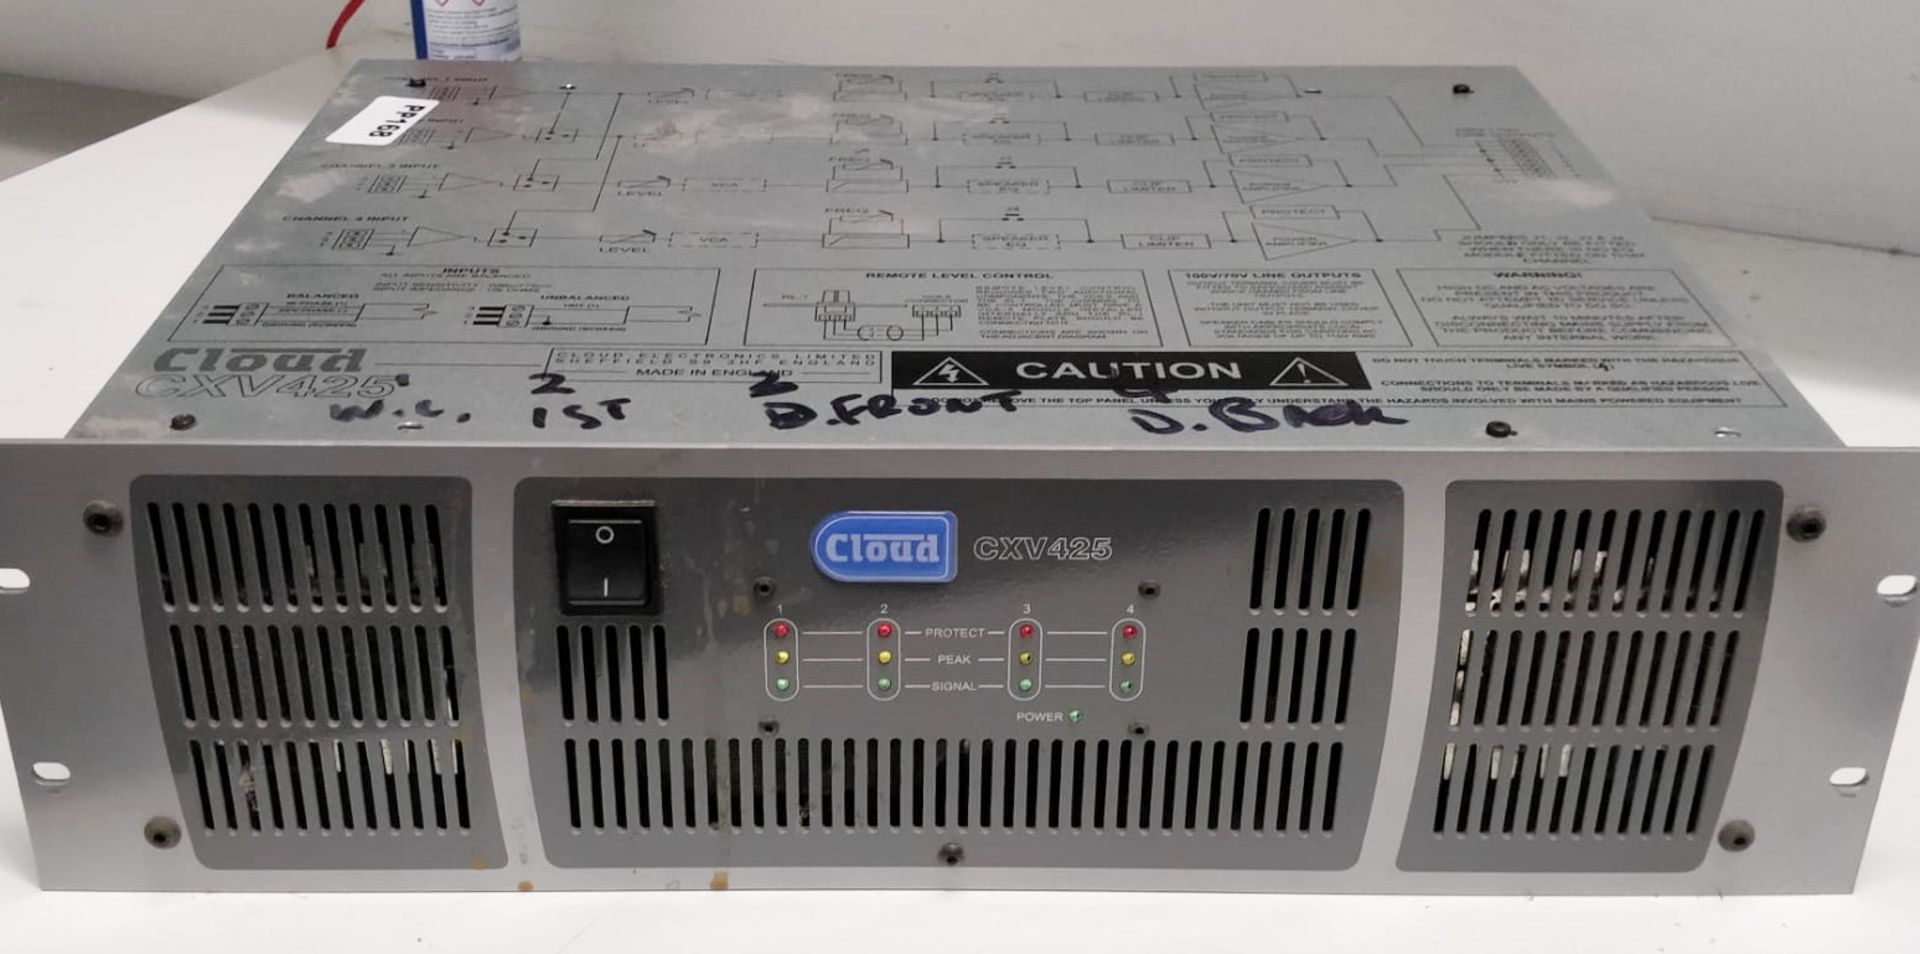 1 x Cloud CXV425 Commercial Music Amplifier - RRP £1,200 - Ref: RB169 - CL558 - Location: Altrincham